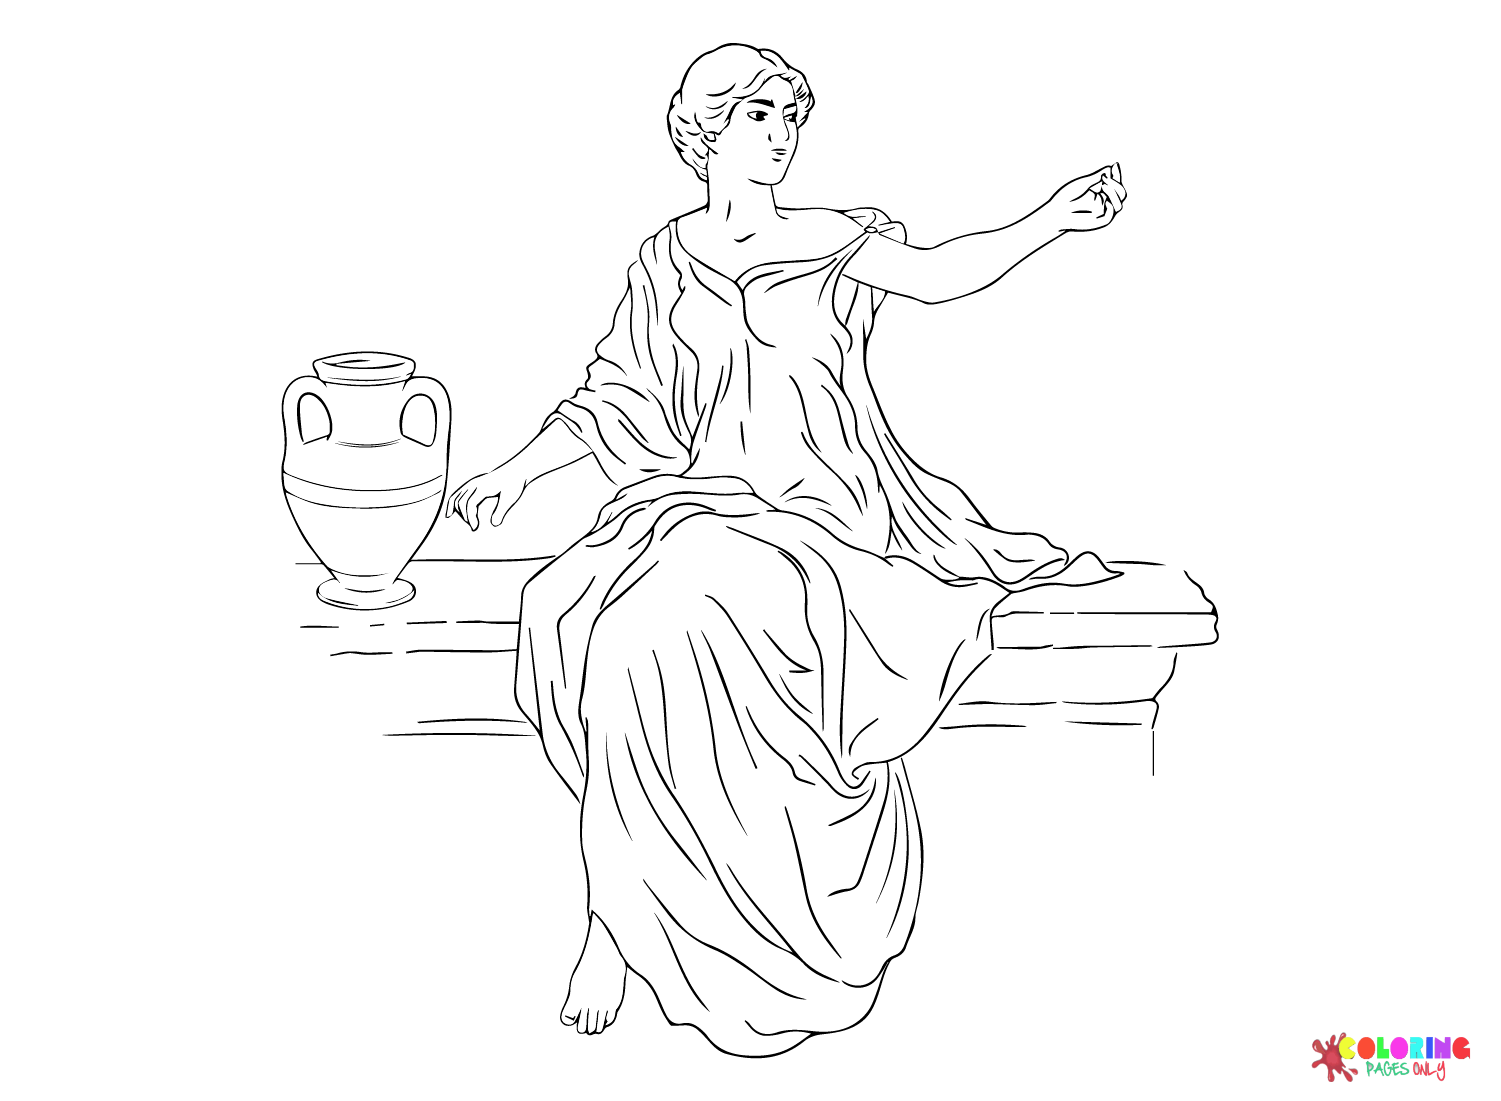 Vector oude Griekse vrouw zit op een stoel in de buurt van een kruik wijn uit het oude Rome en het Romeinse rijk